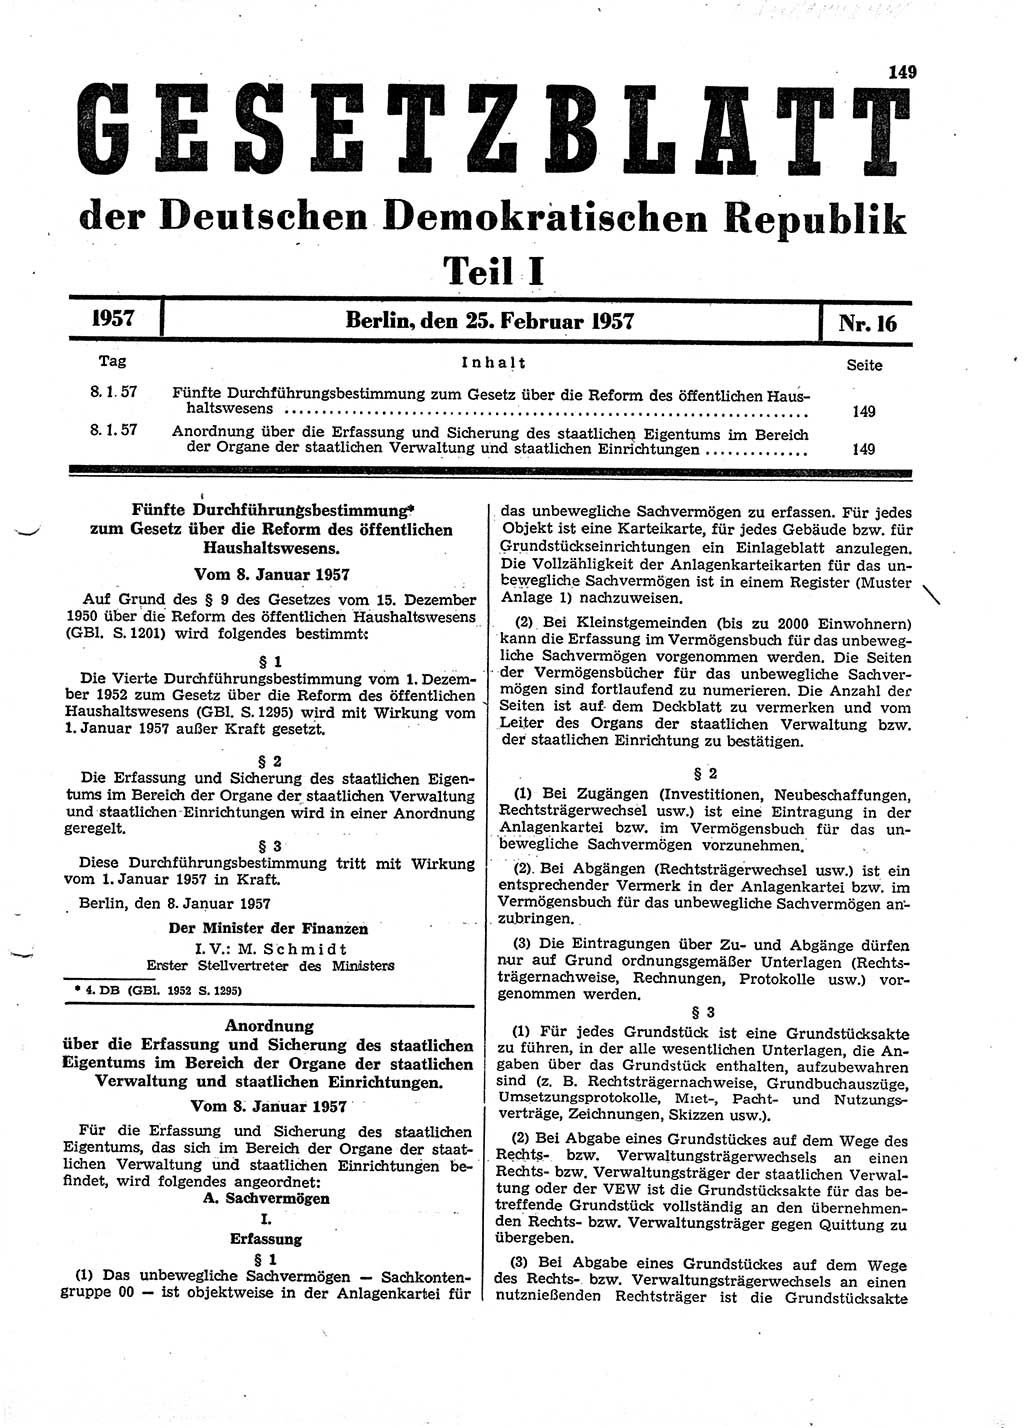 Gesetzblatt (GBl.) der Deutschen Demokratischen Republik (DDR) Teil Ⅰ 1957, Seite 149 (GBl. DDR Ⅰ 1957, S. 149)